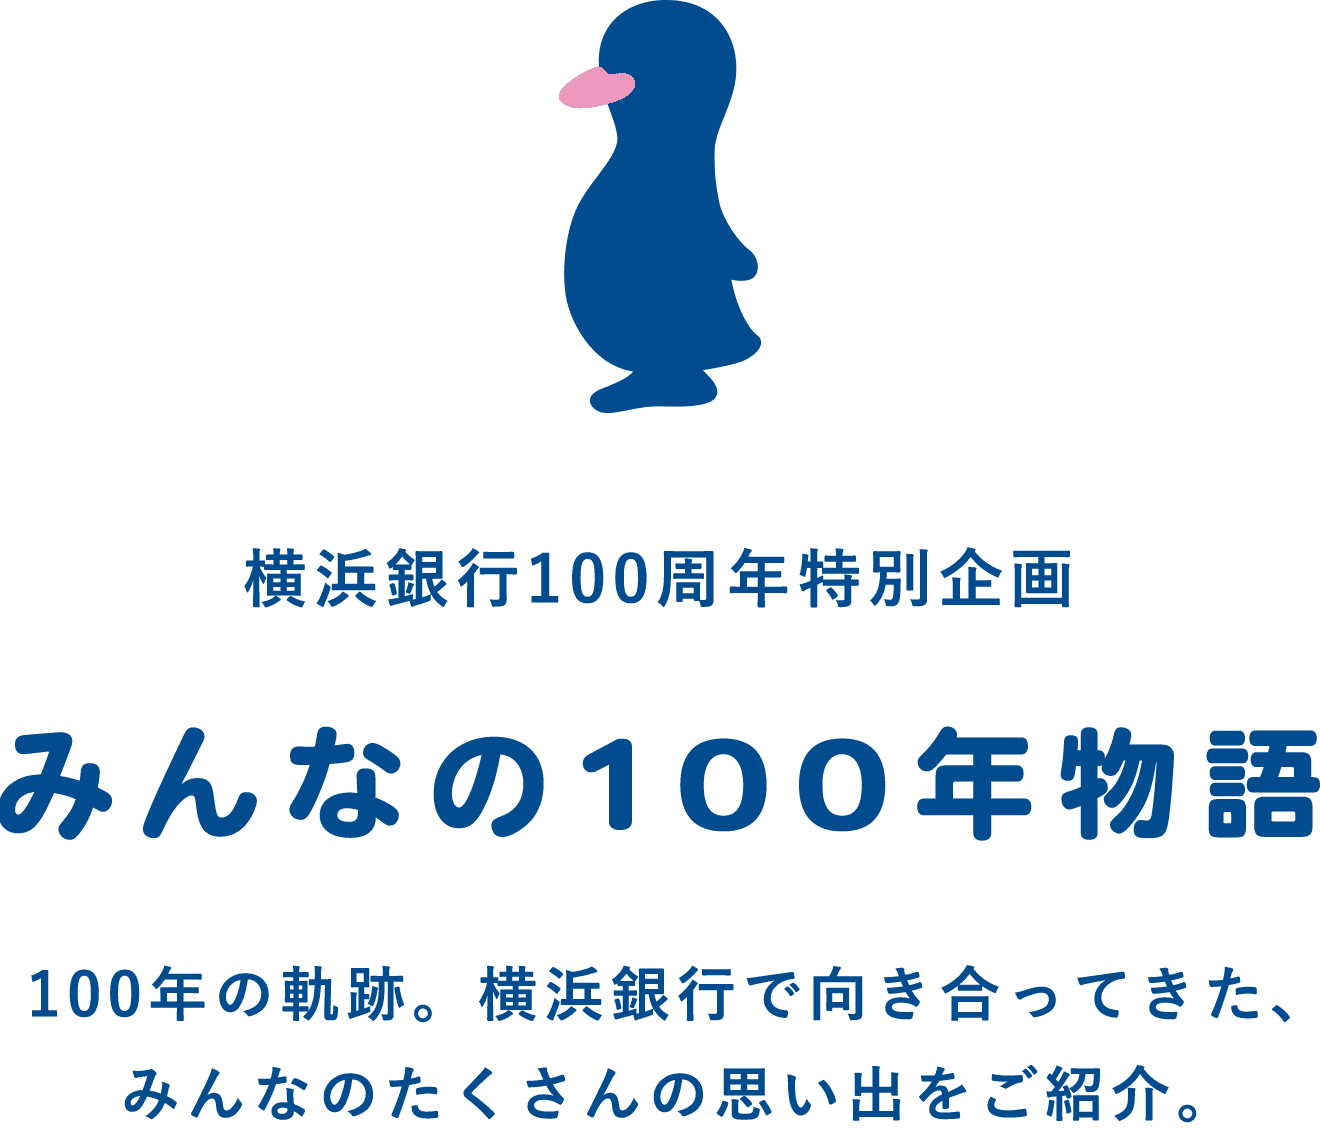 横浜銀行100周年特別企画 みんなの100年物語 100年の軌跡。たくさんの思い出をご紹介。